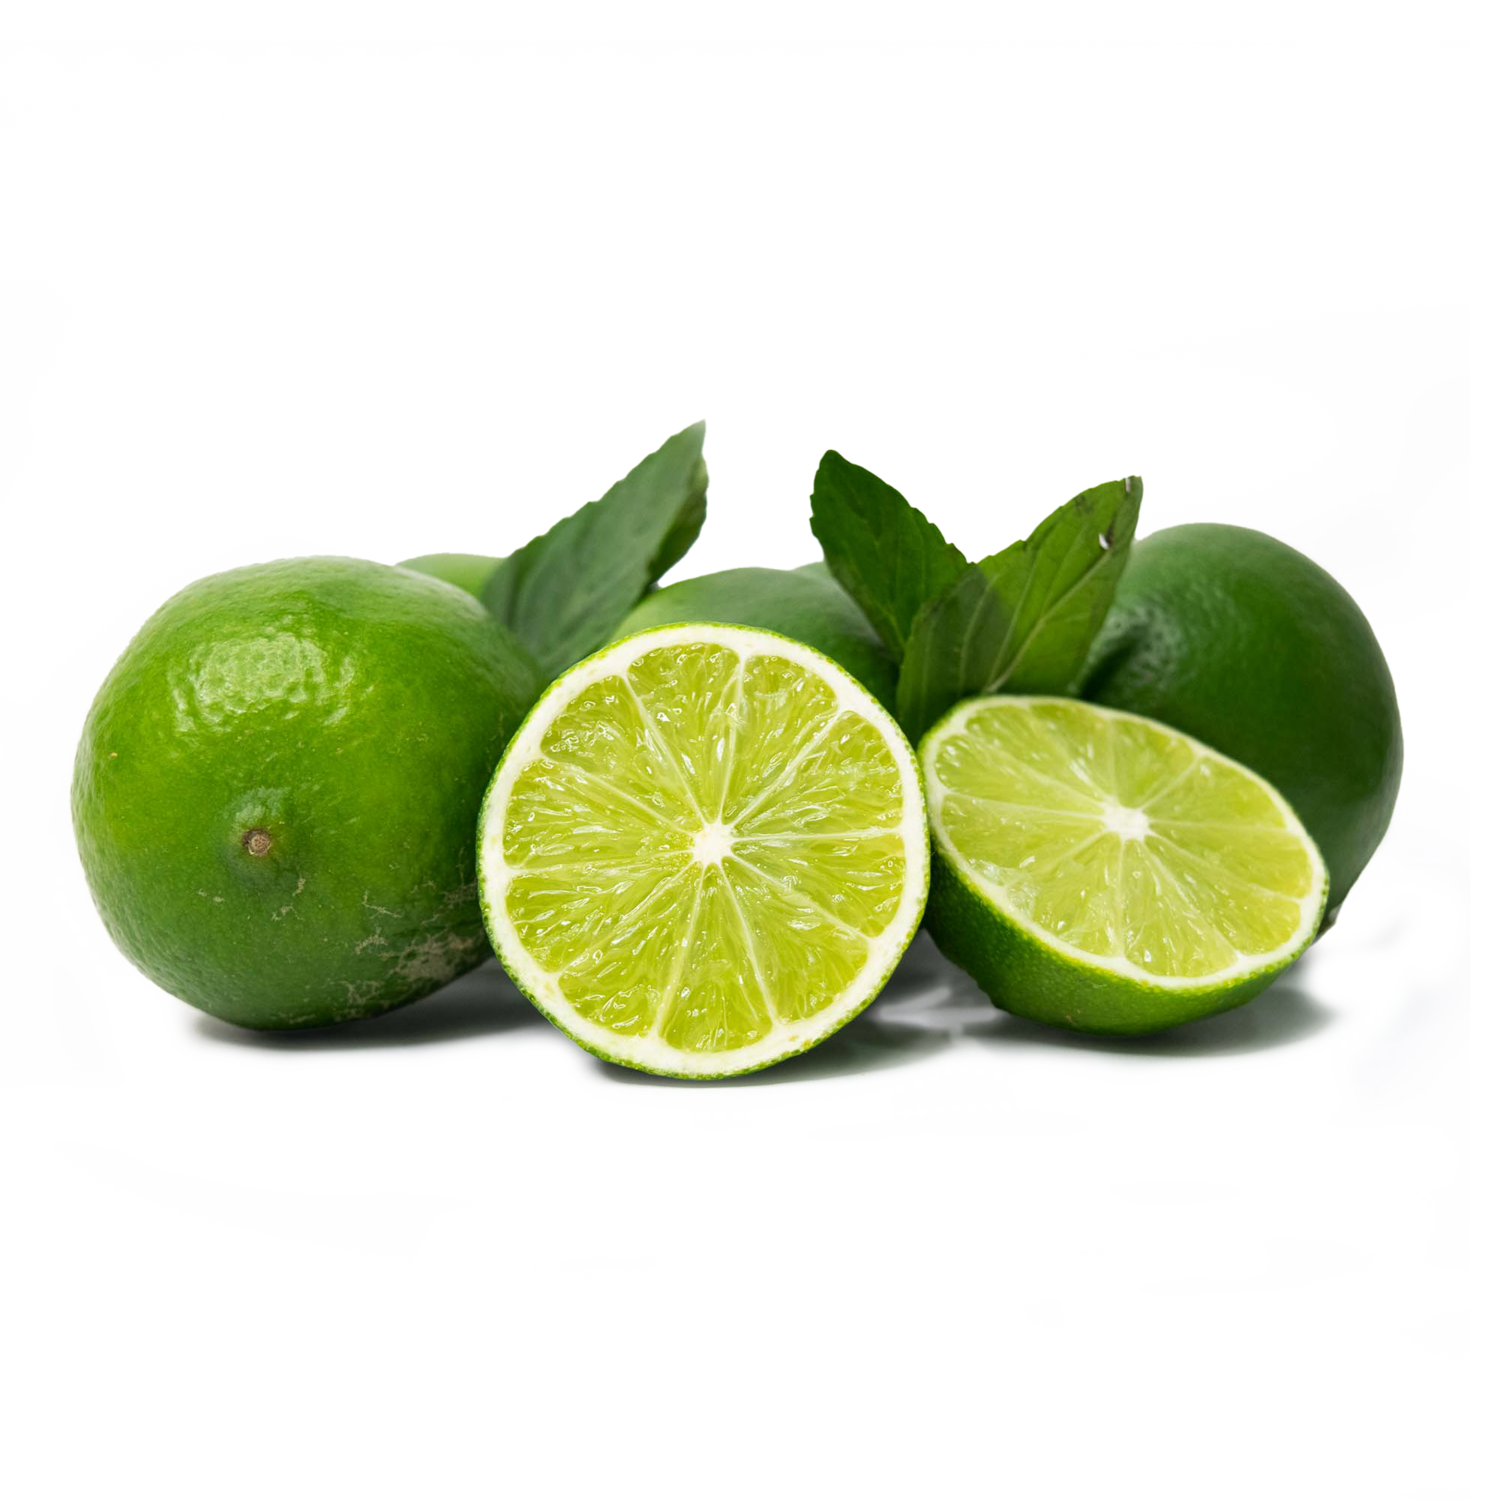 Limon Persa Premium - Pequeño - Unidad